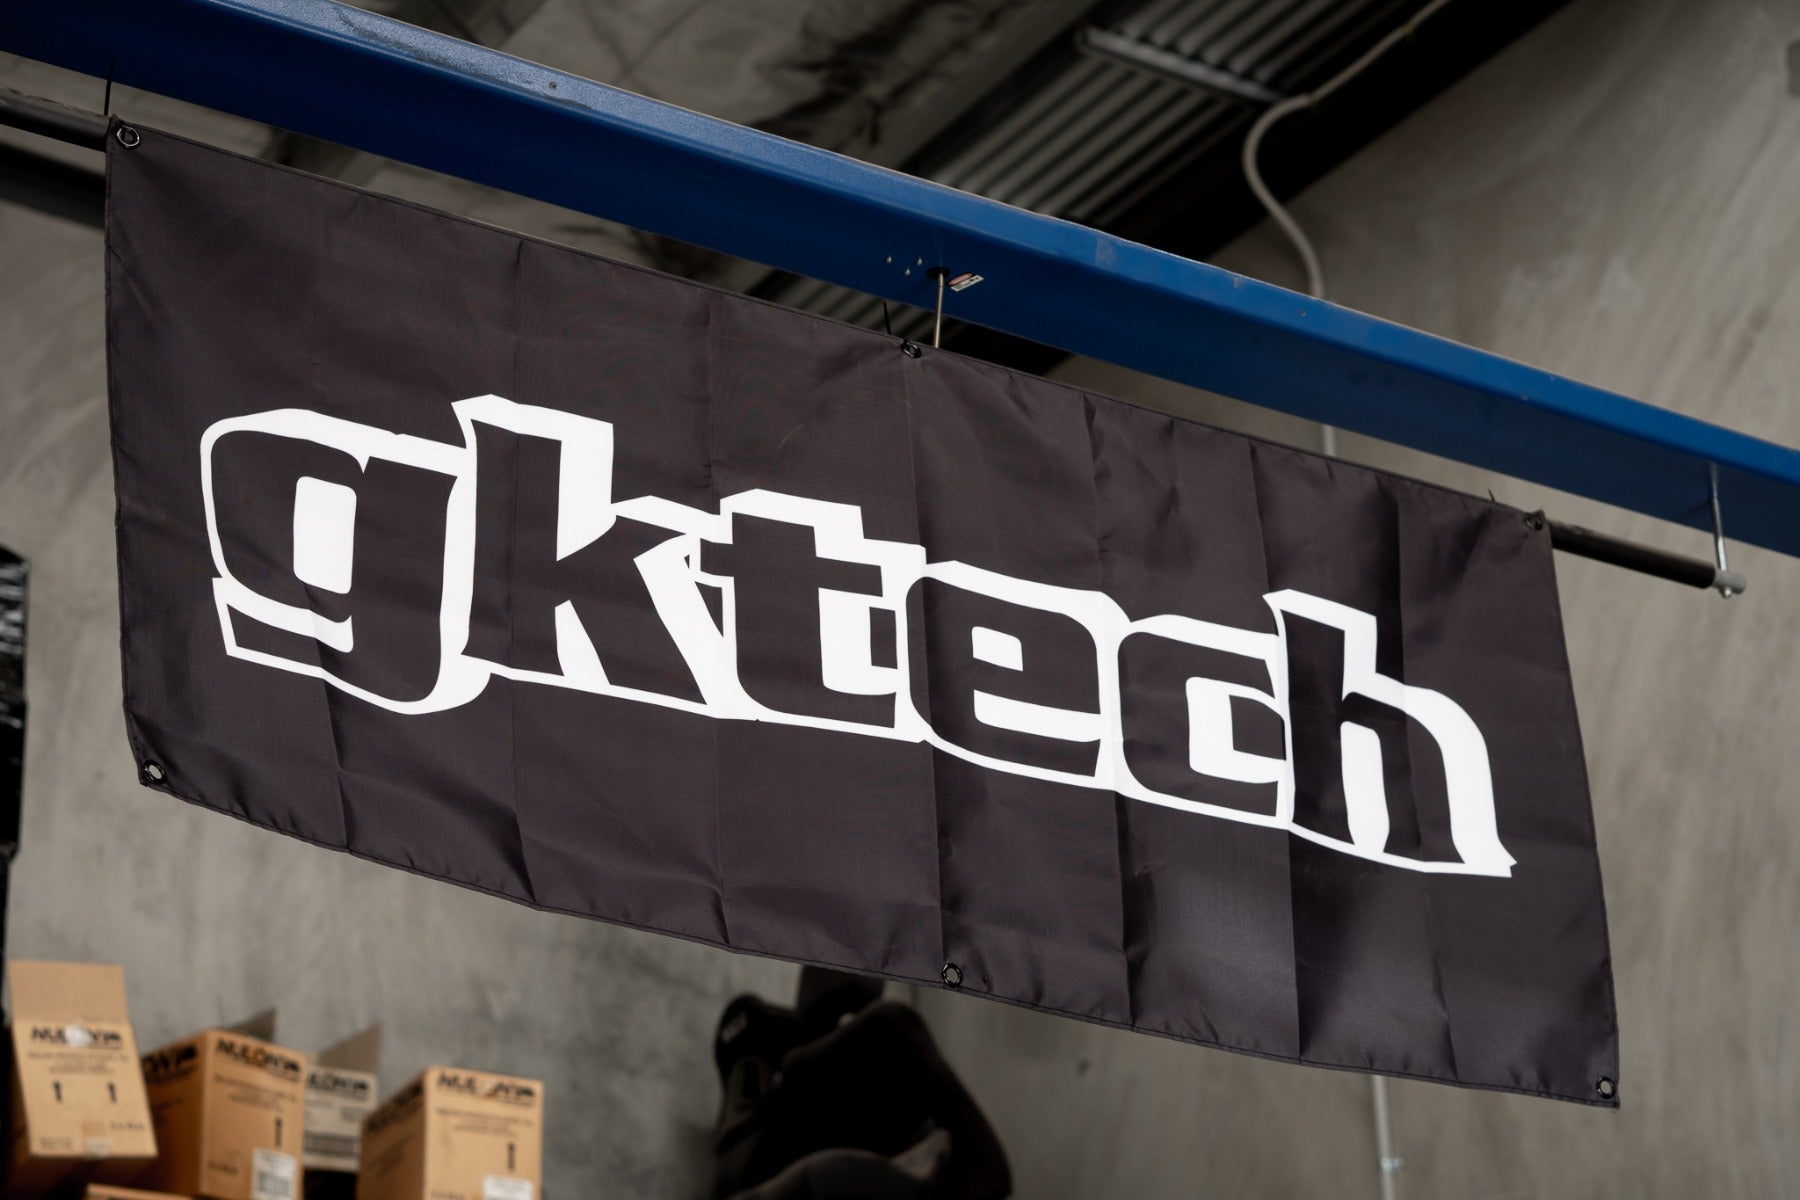 Gktech garage banner